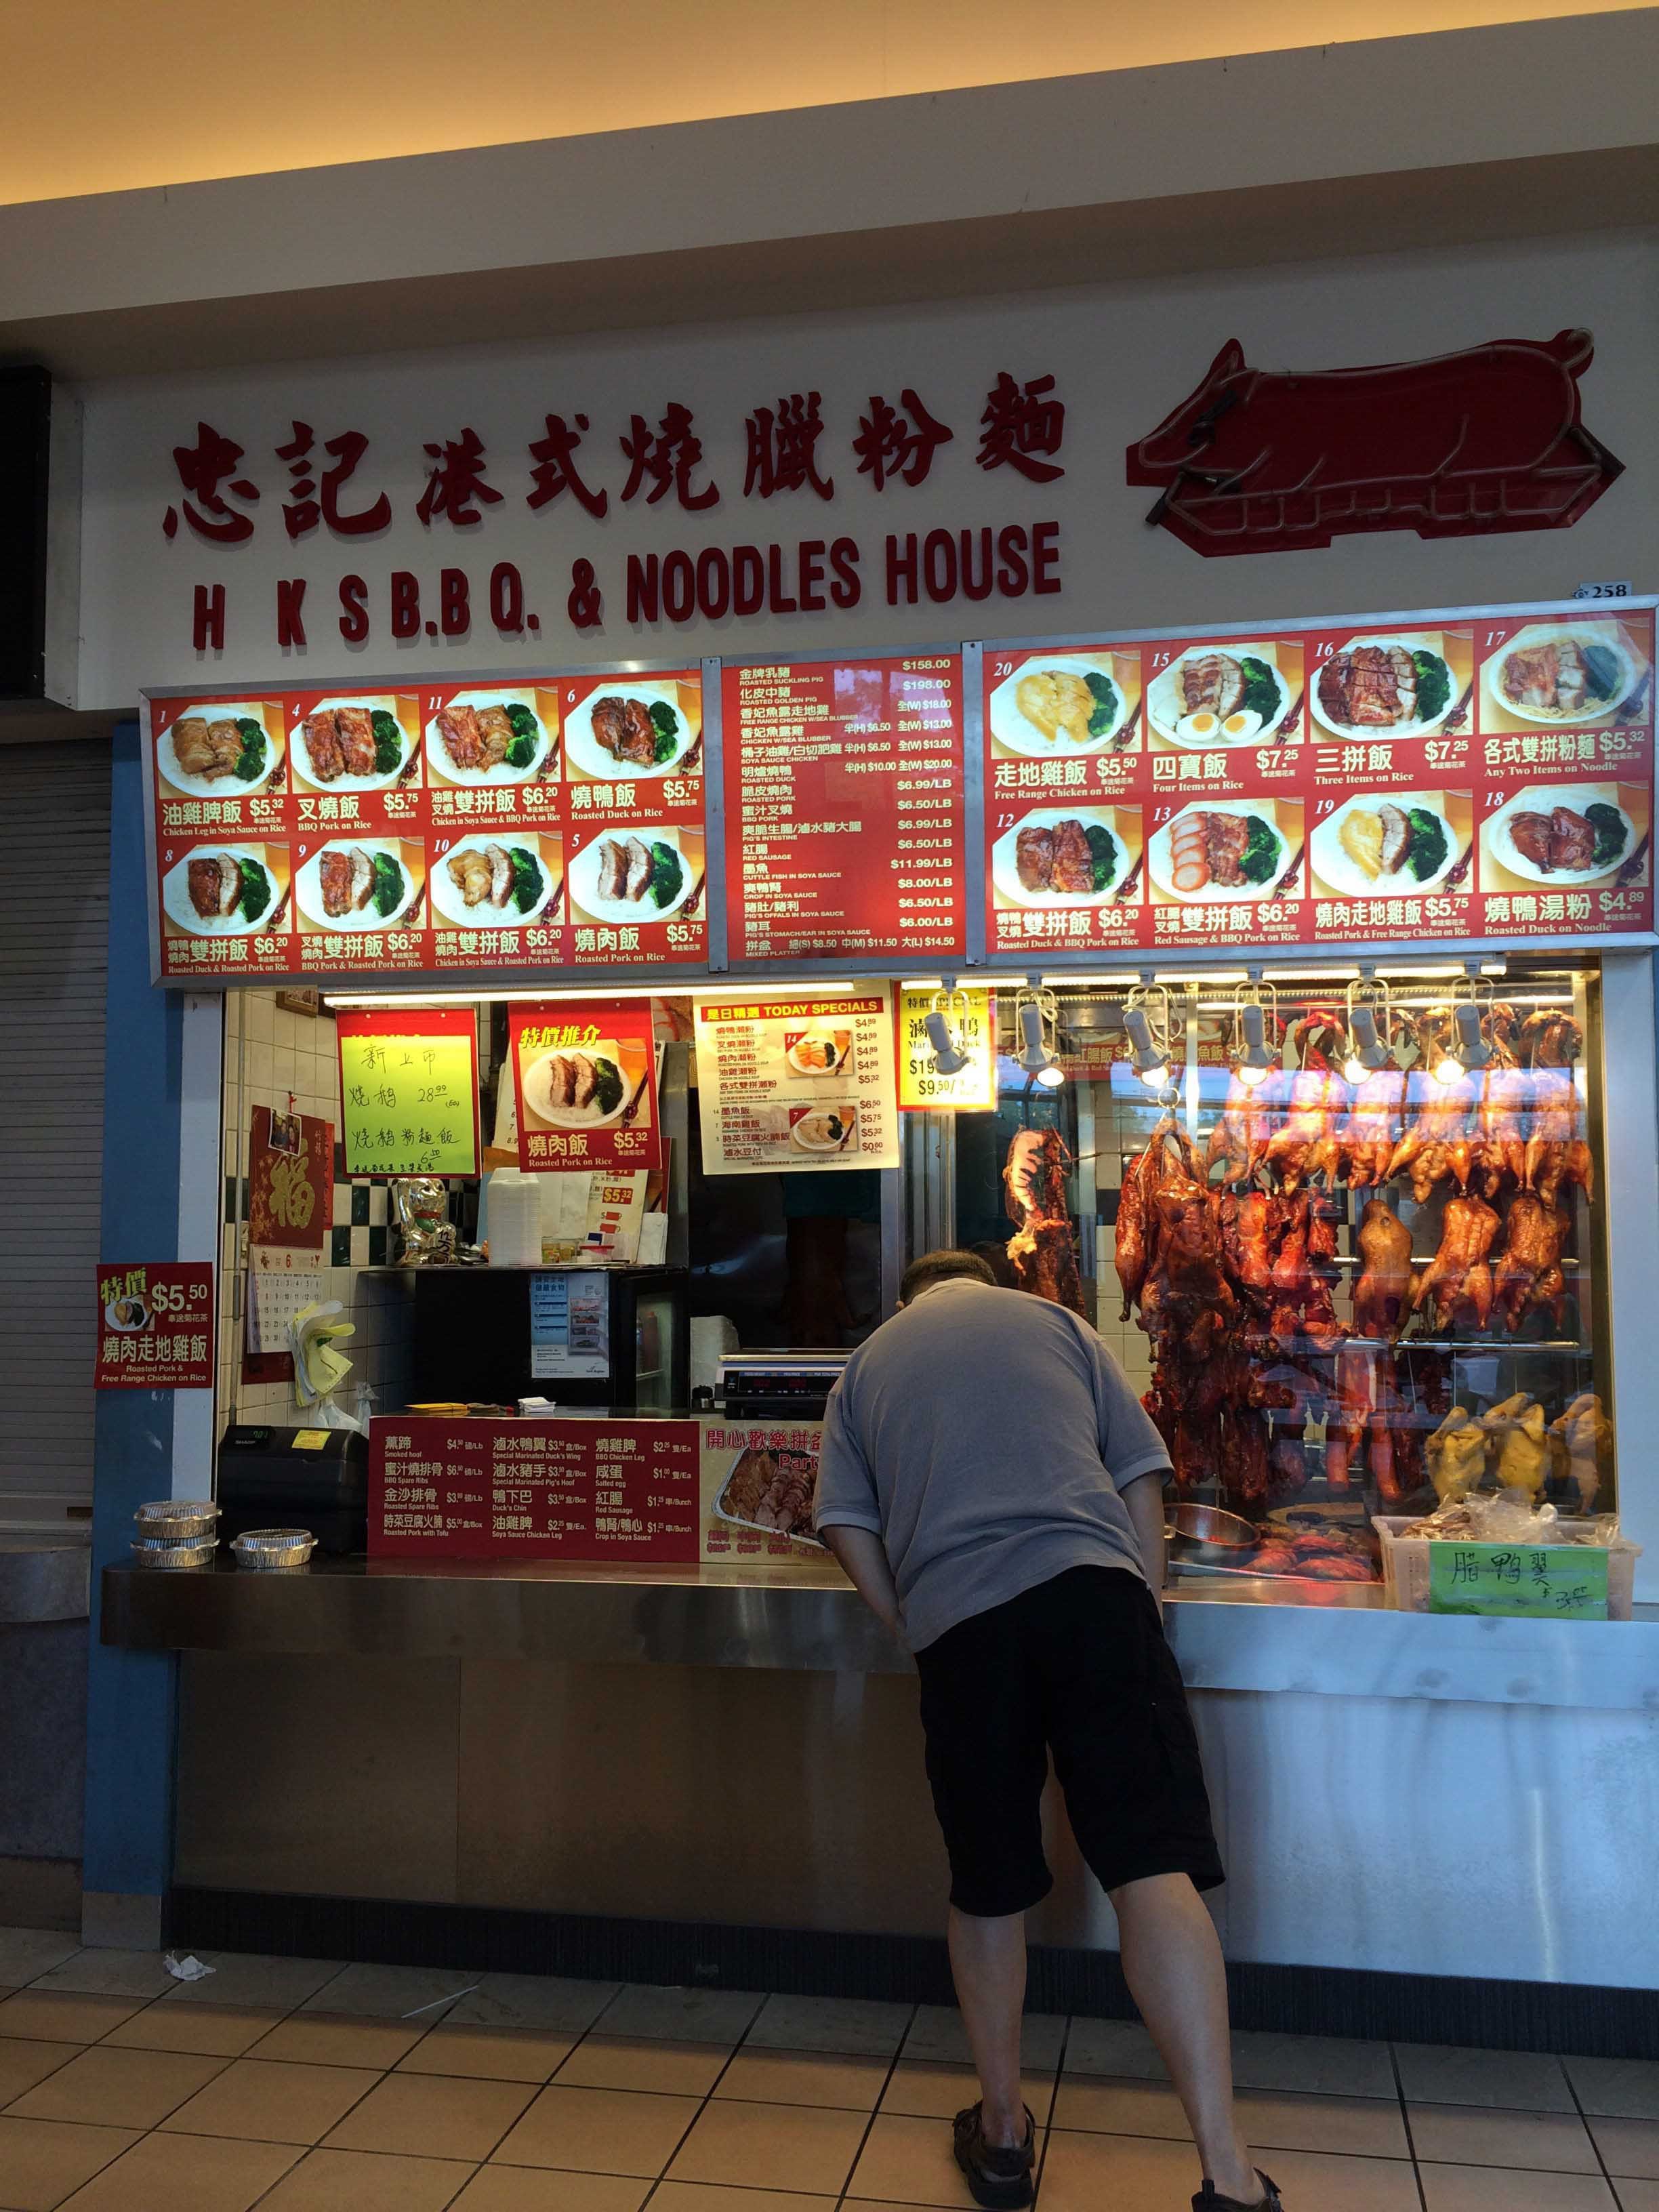 HK's BBQ & Noodle House